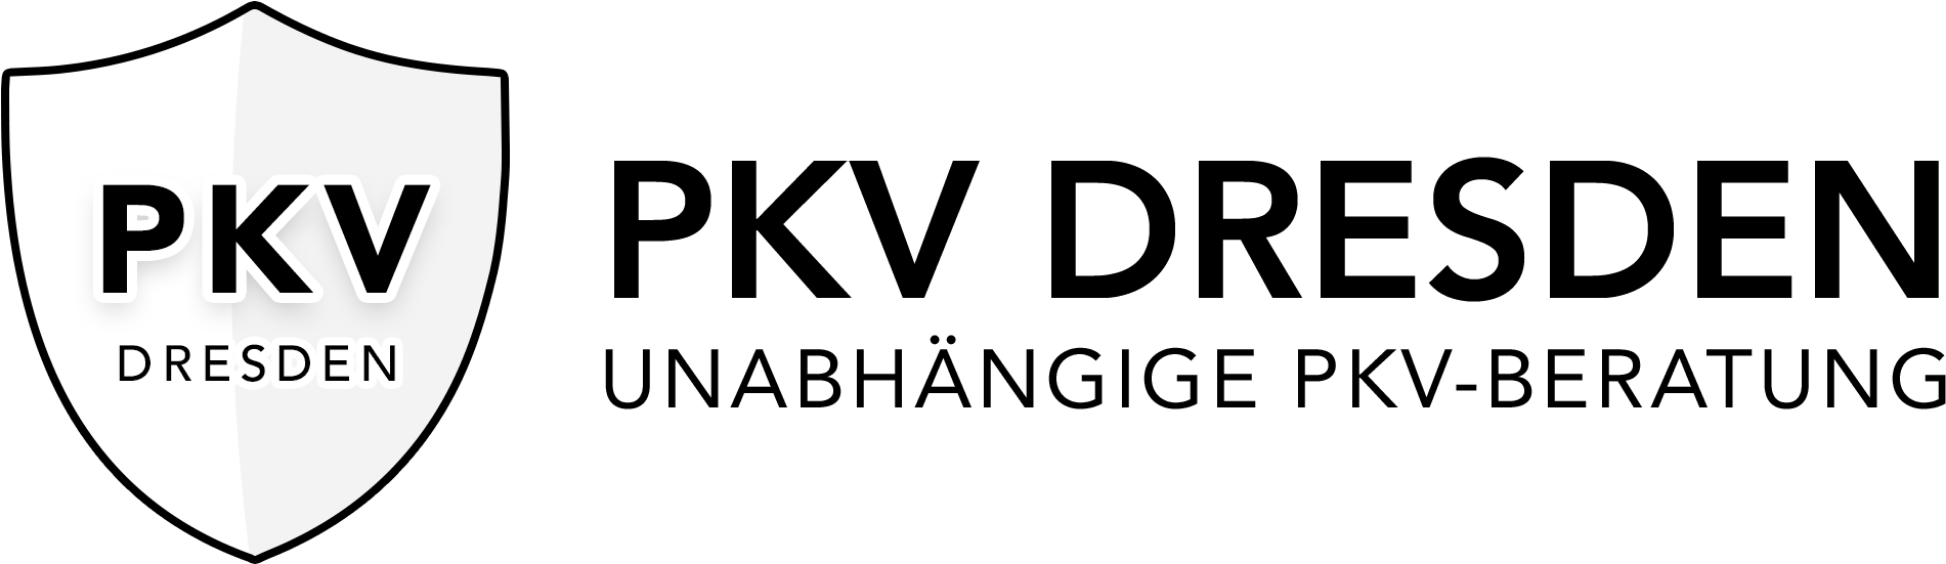 PKV DRESDEN - Krankenversicherungen - Versicherungsdienstleister